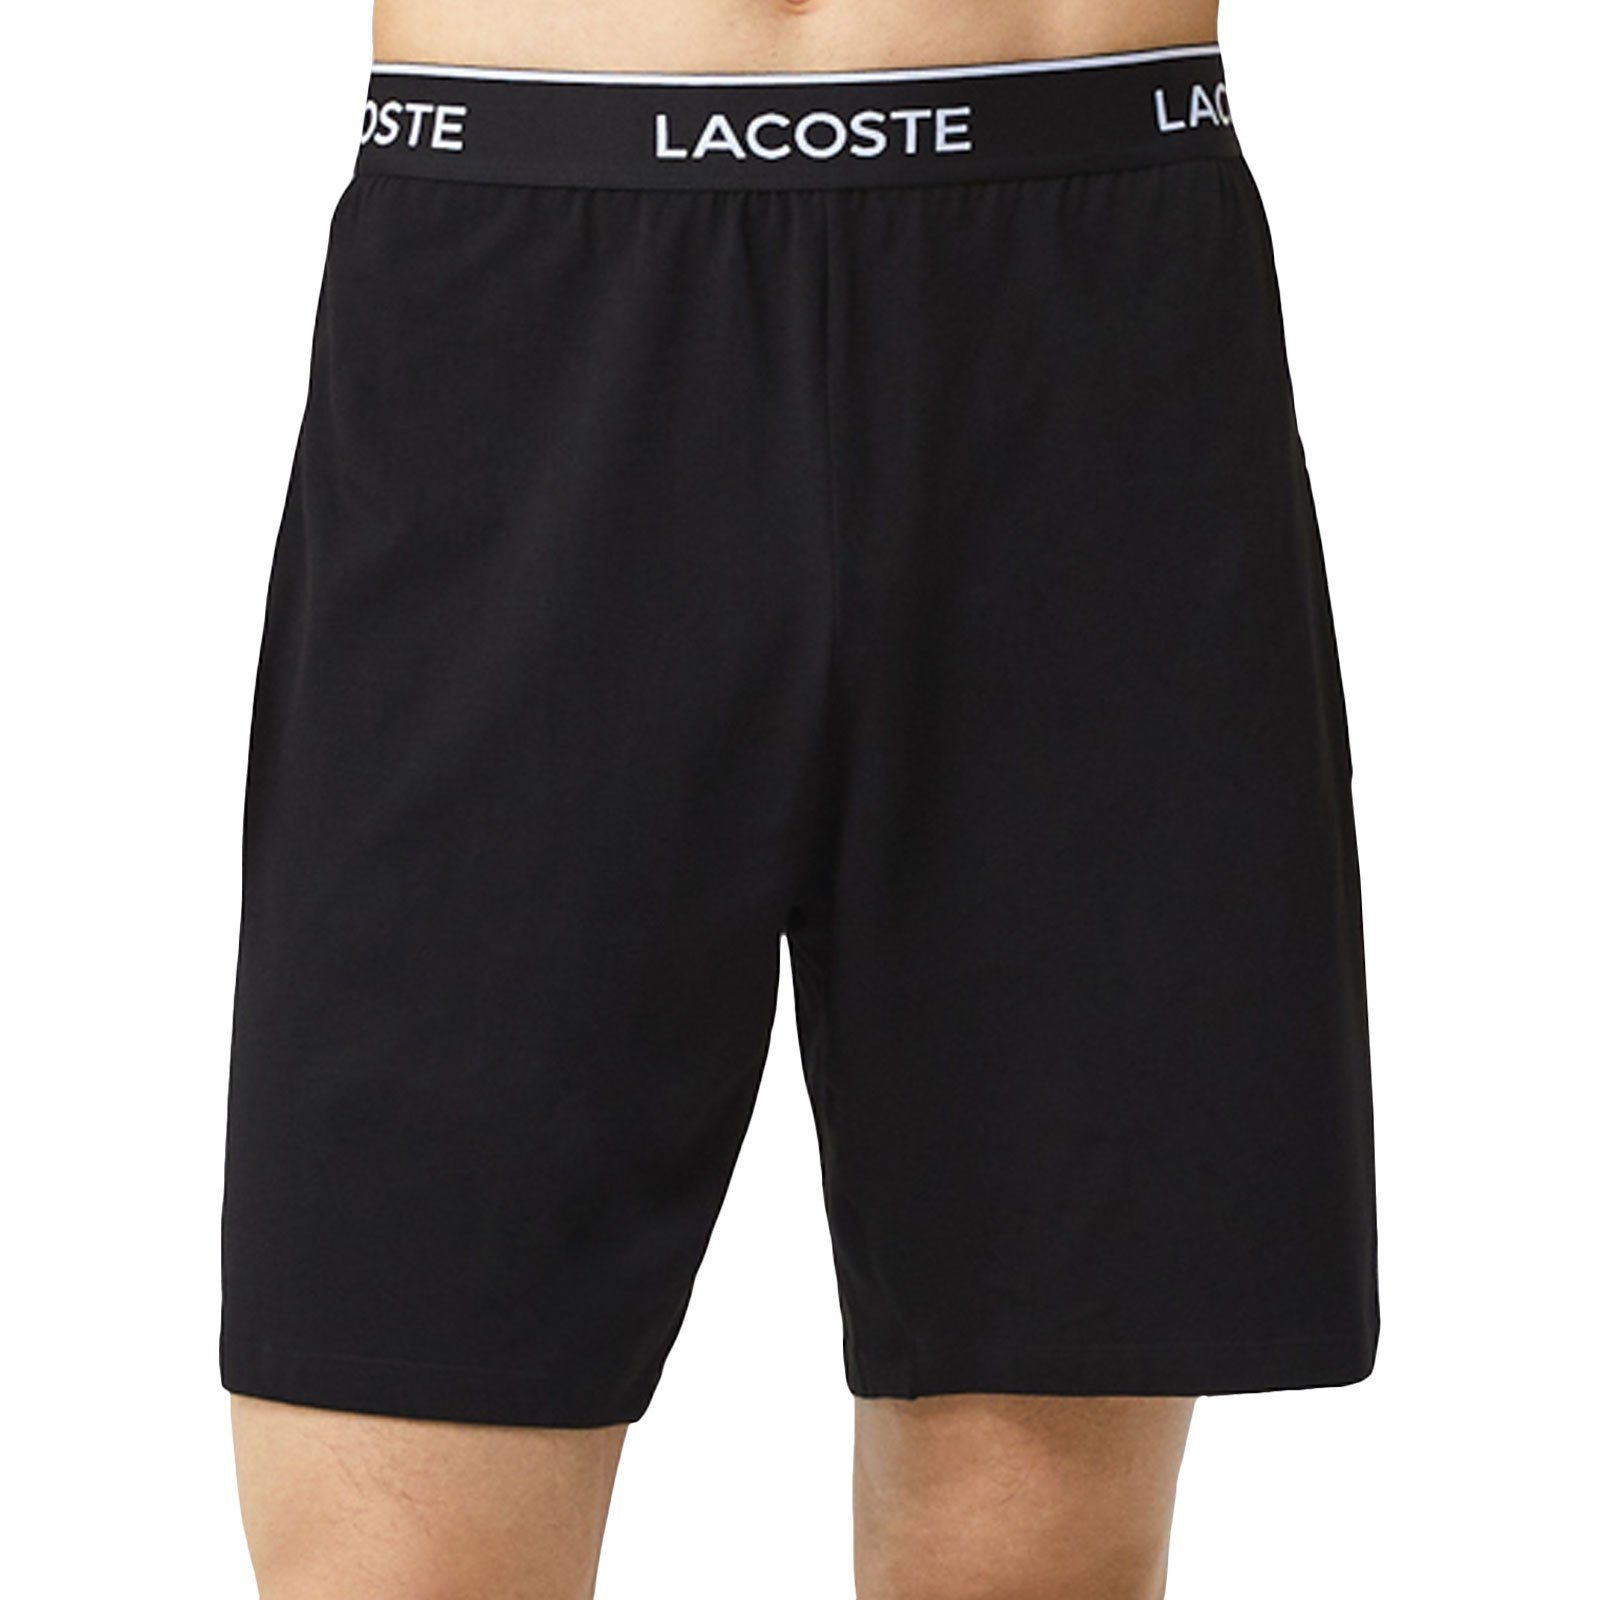 Lacoste Pyjamashorts Loungewear Shorts noir umlaufenden Markenschriftzug 031 mit